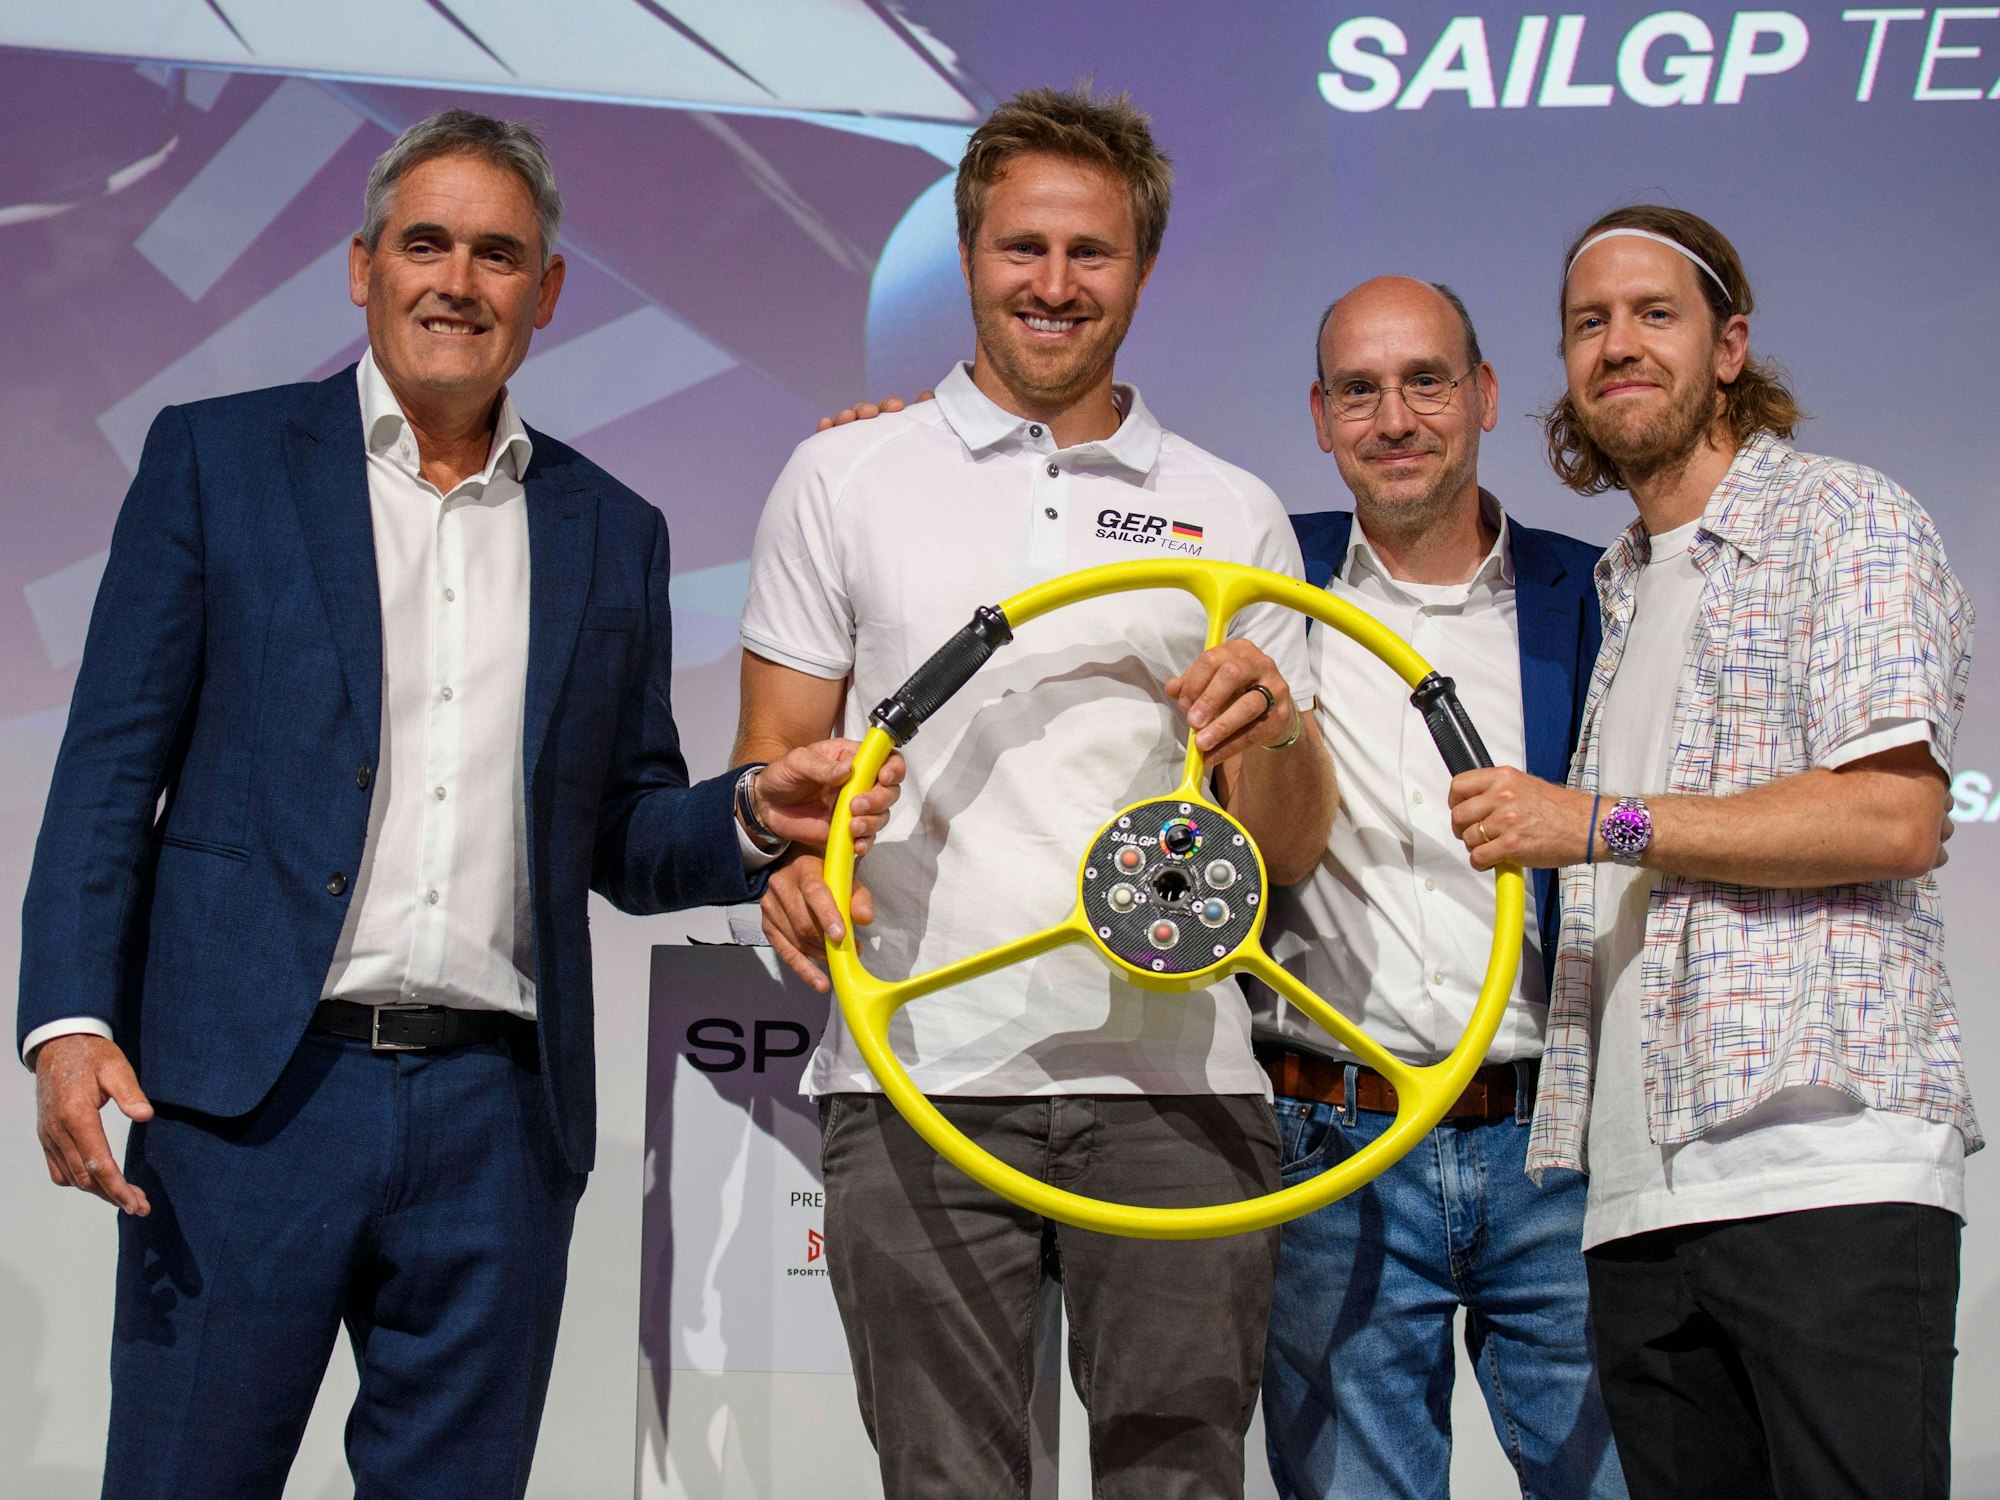 Gruppenfoto vom deutschen SailGP-Team.